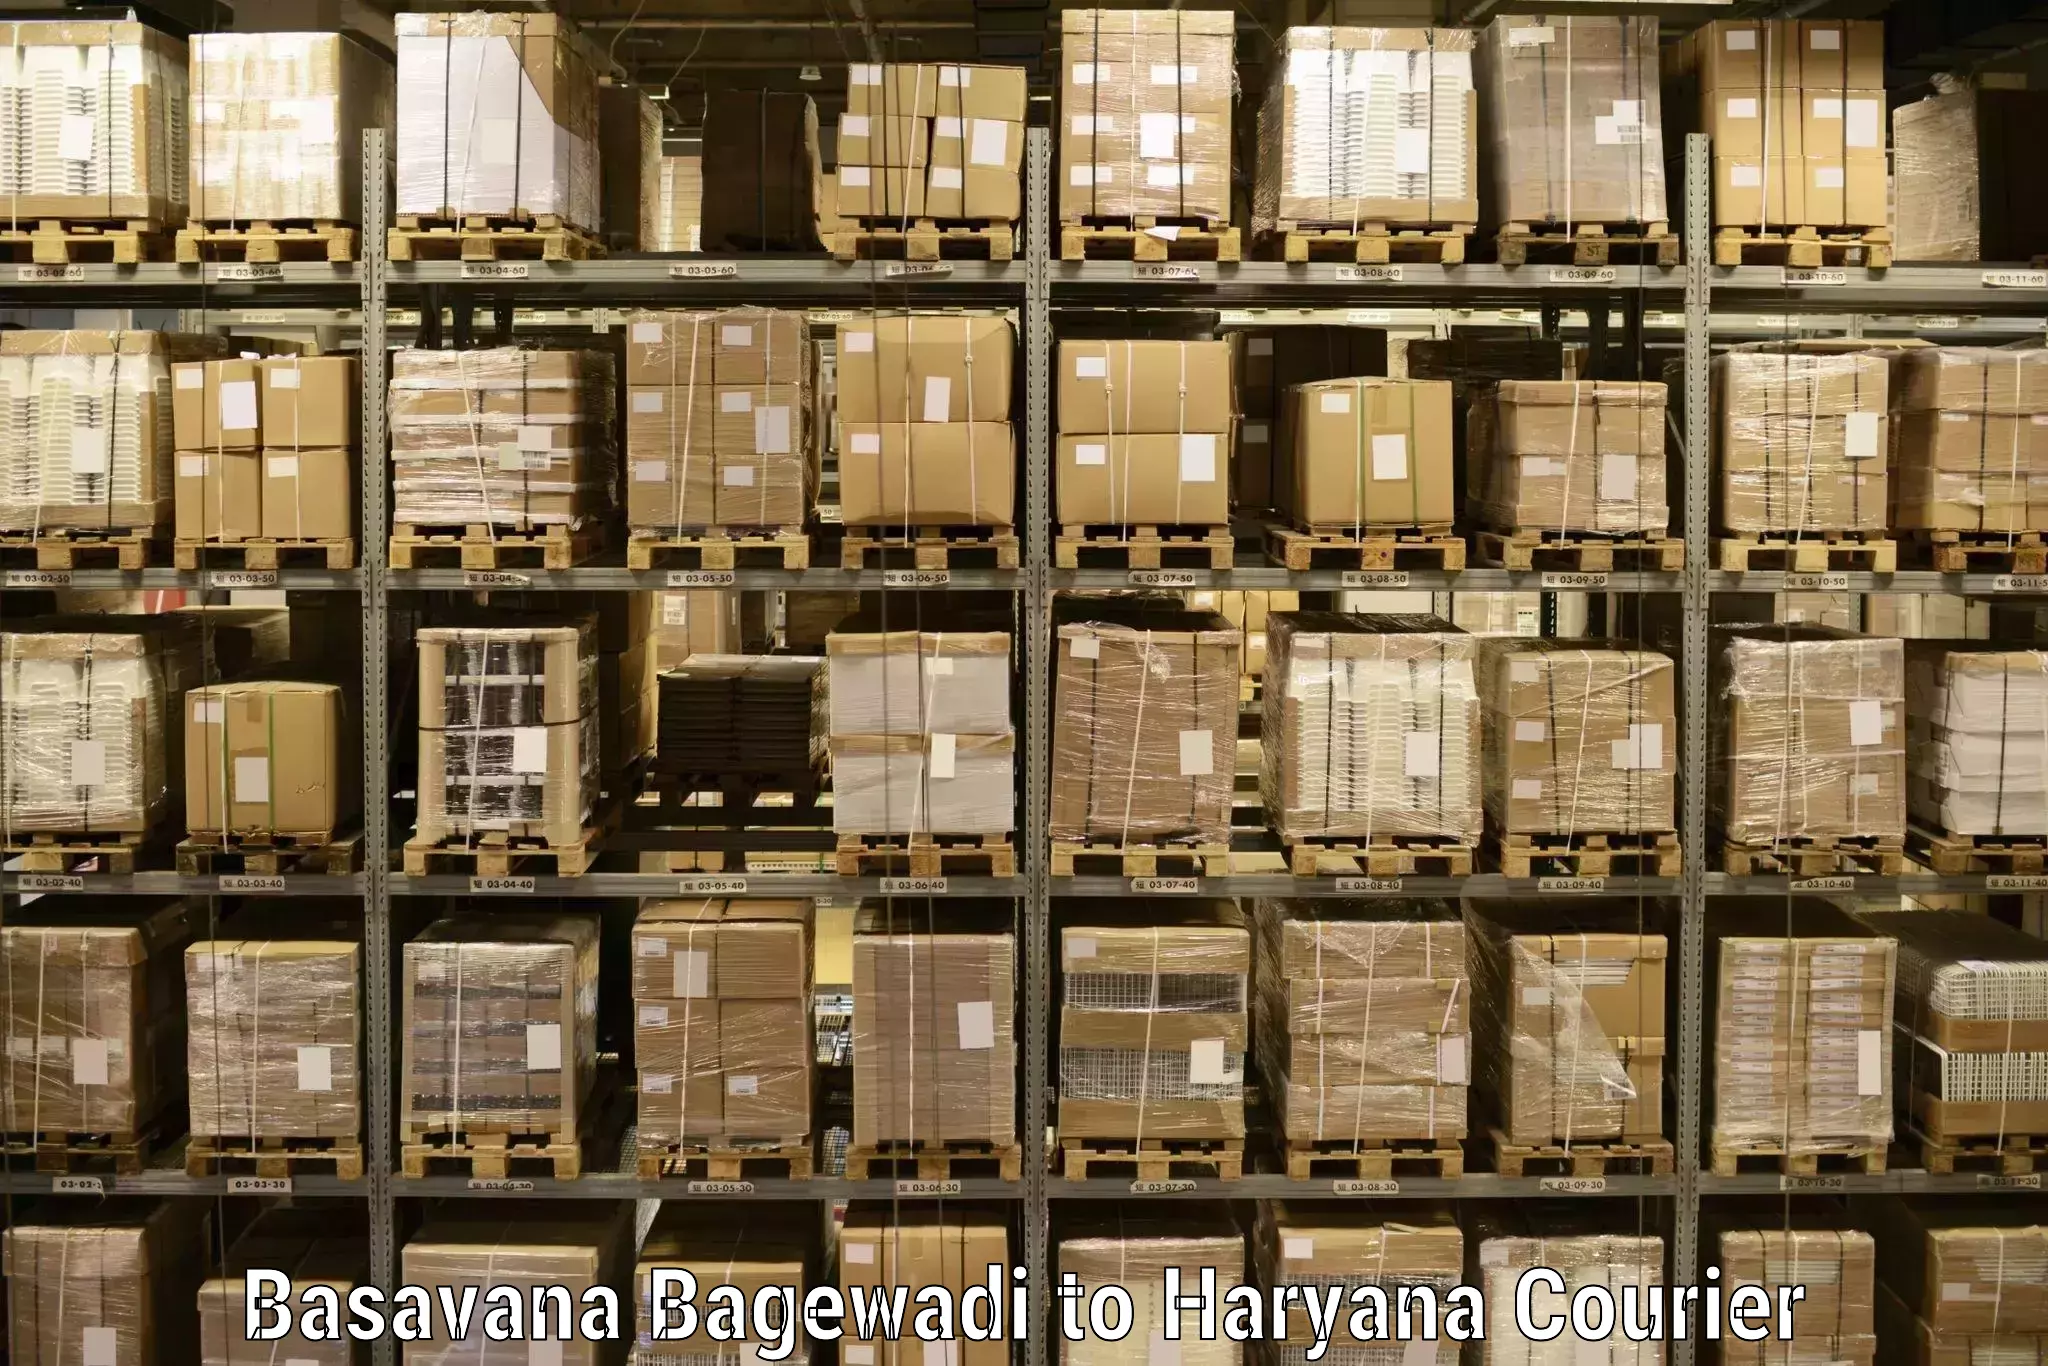 Tailored freight services Basavana Bagewadi to Gurgaon